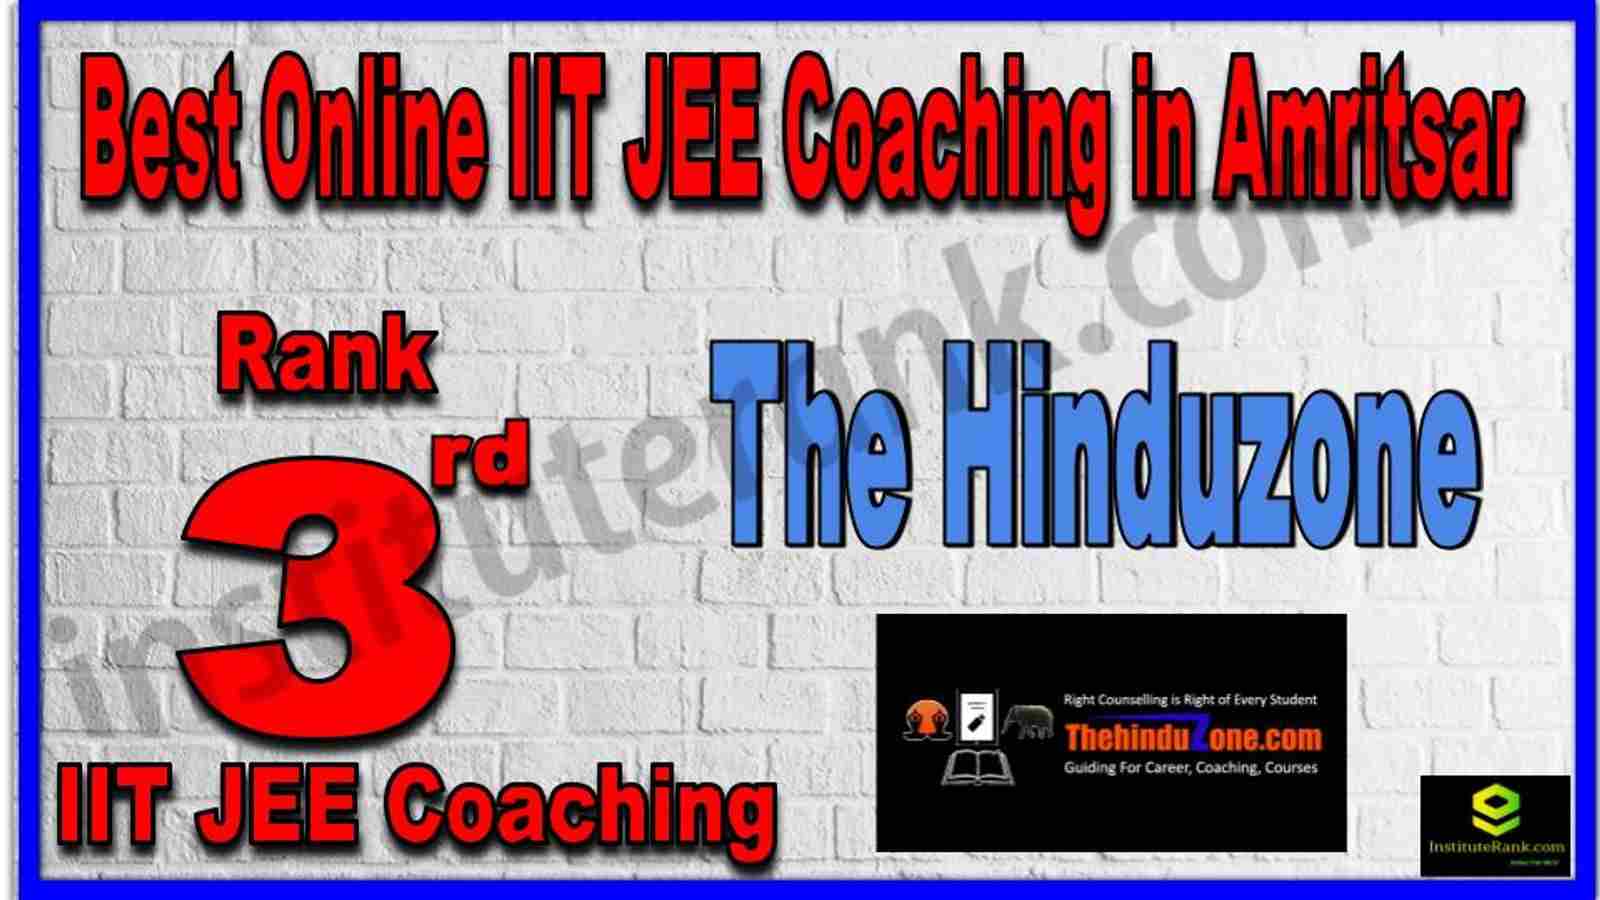 Rank 3rd Best Online IIT JEE Coaching in Amritsar